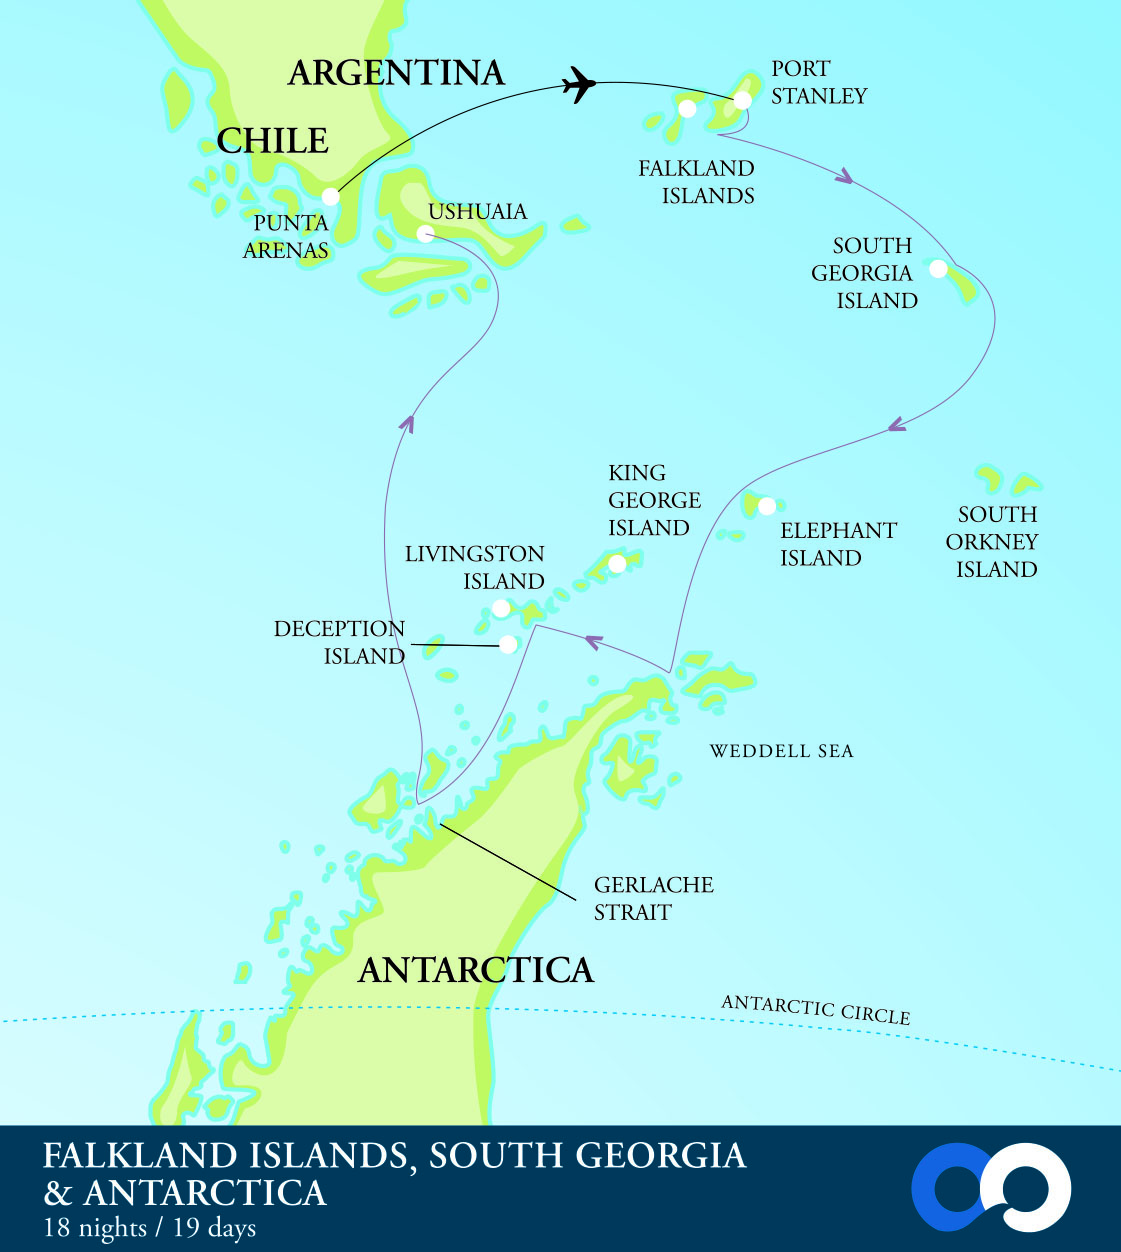 FALKLAND ISLANDS, SOUTH GEORGIA, ANTARCTICA